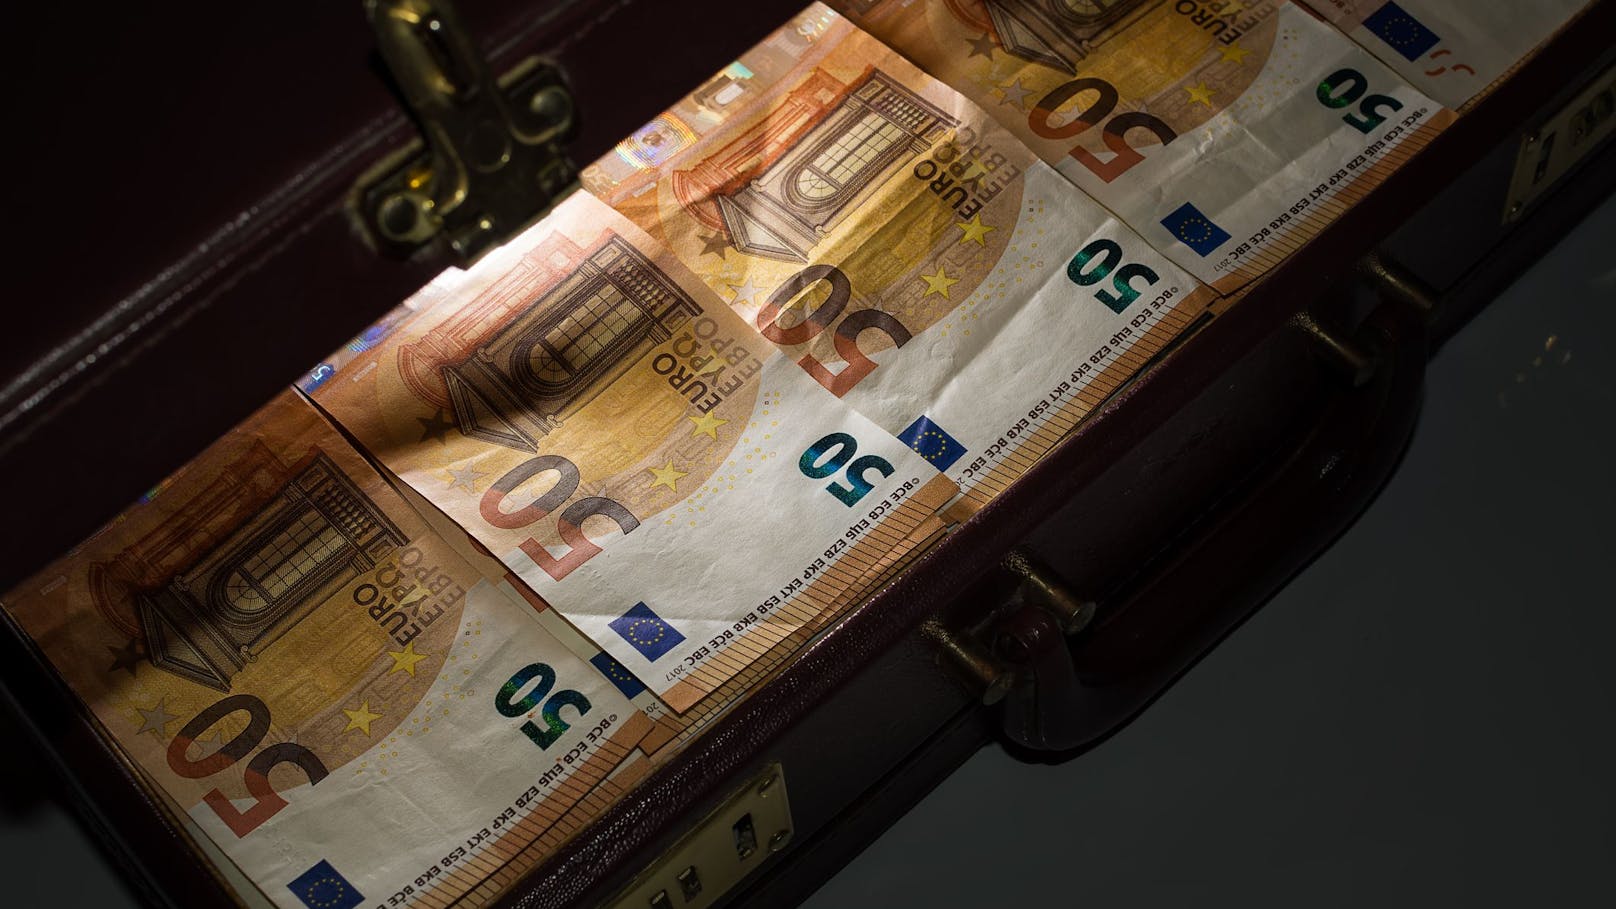 Koffer-Krimi kostet 64-Jährige Zehntausende Euro